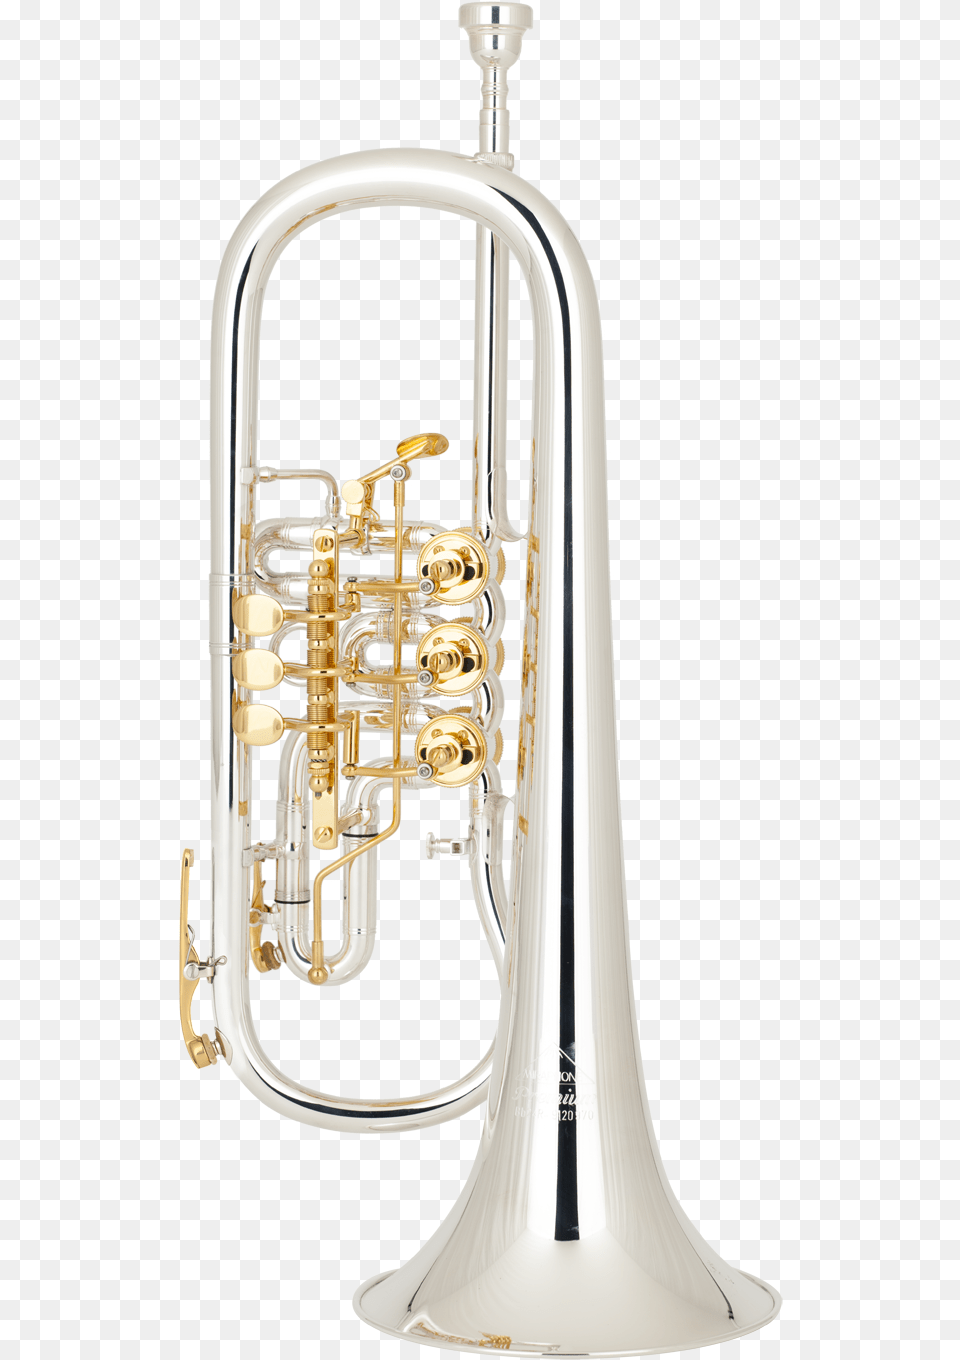 Miraphone Flugelhorn, Brass Section, Musical Instrument, Horn, Trumpet Png Image